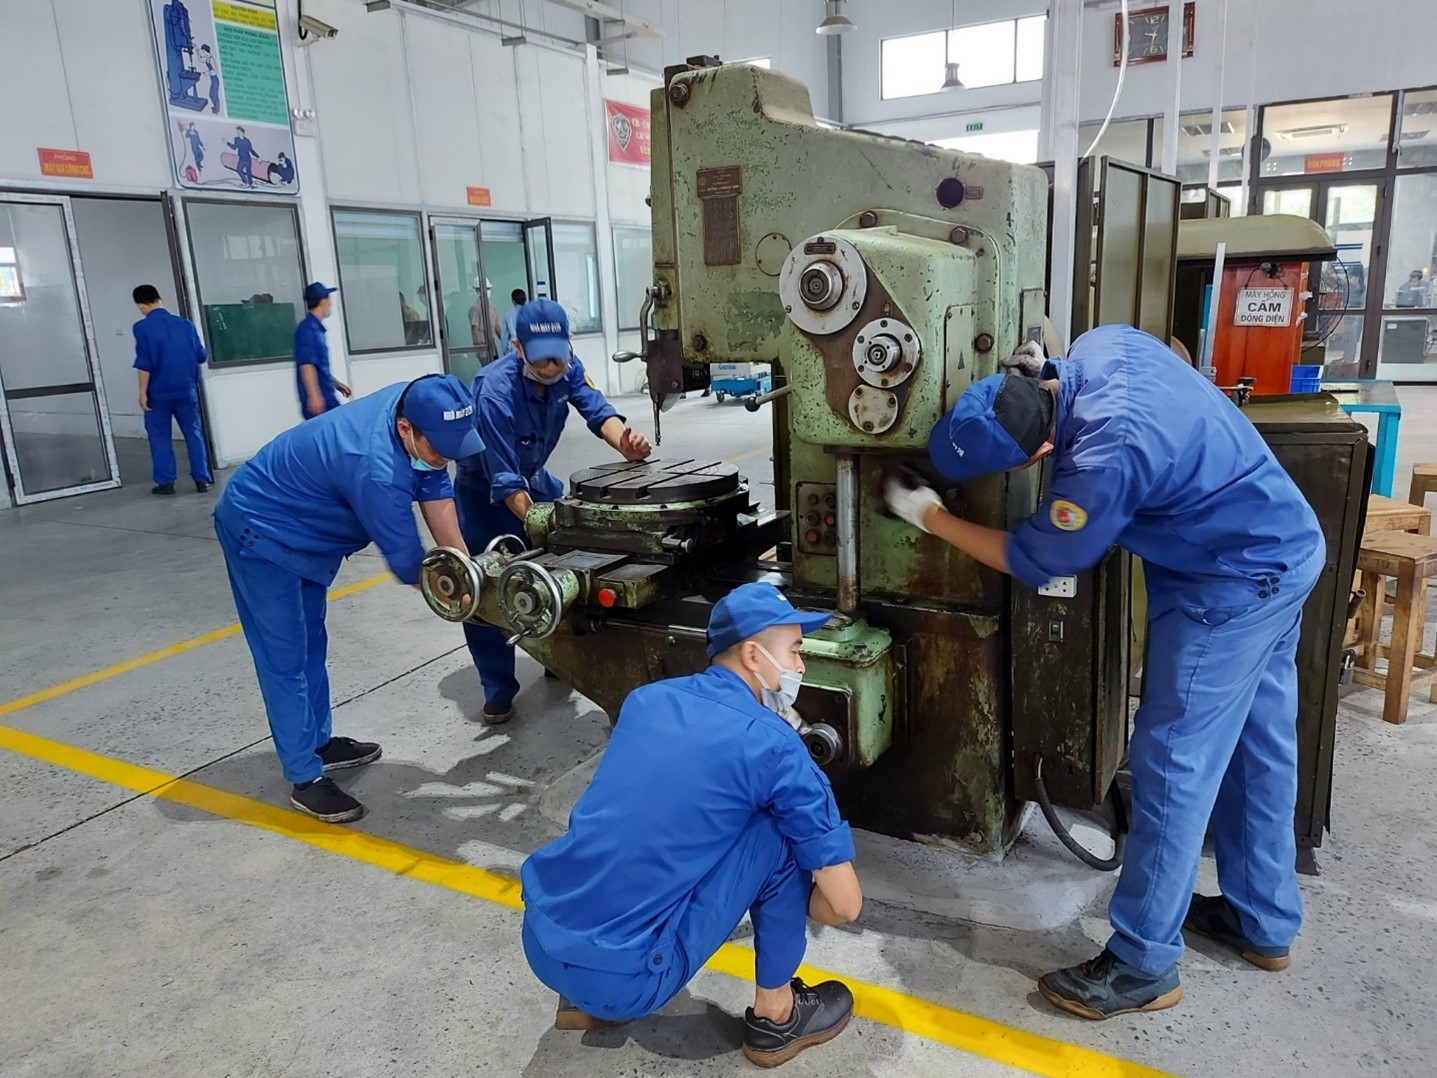 An toàn vệ sinh viên cùng thảo luận sửa máy tại Nhà máy Z129 (Tuyên Quang).